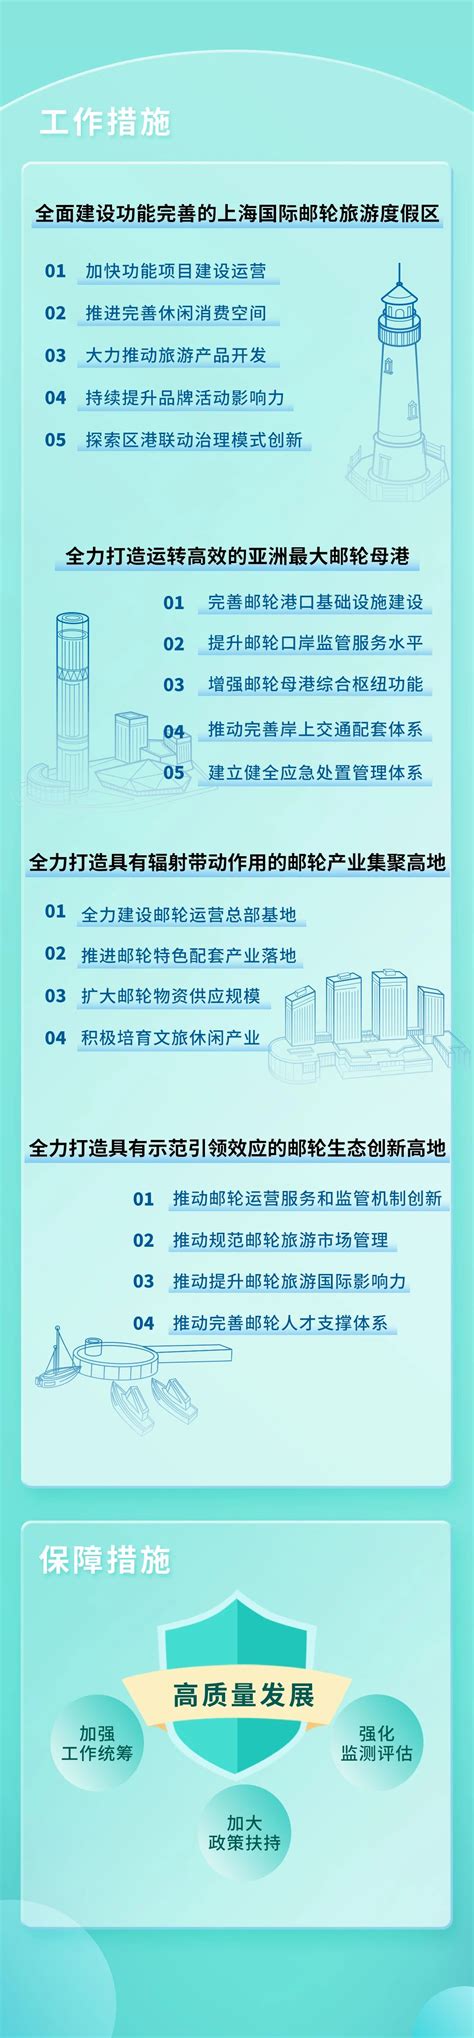 宝山区杨行镇总体规划(2021-2035年)带详细规划图示!_房产资讯_房天下